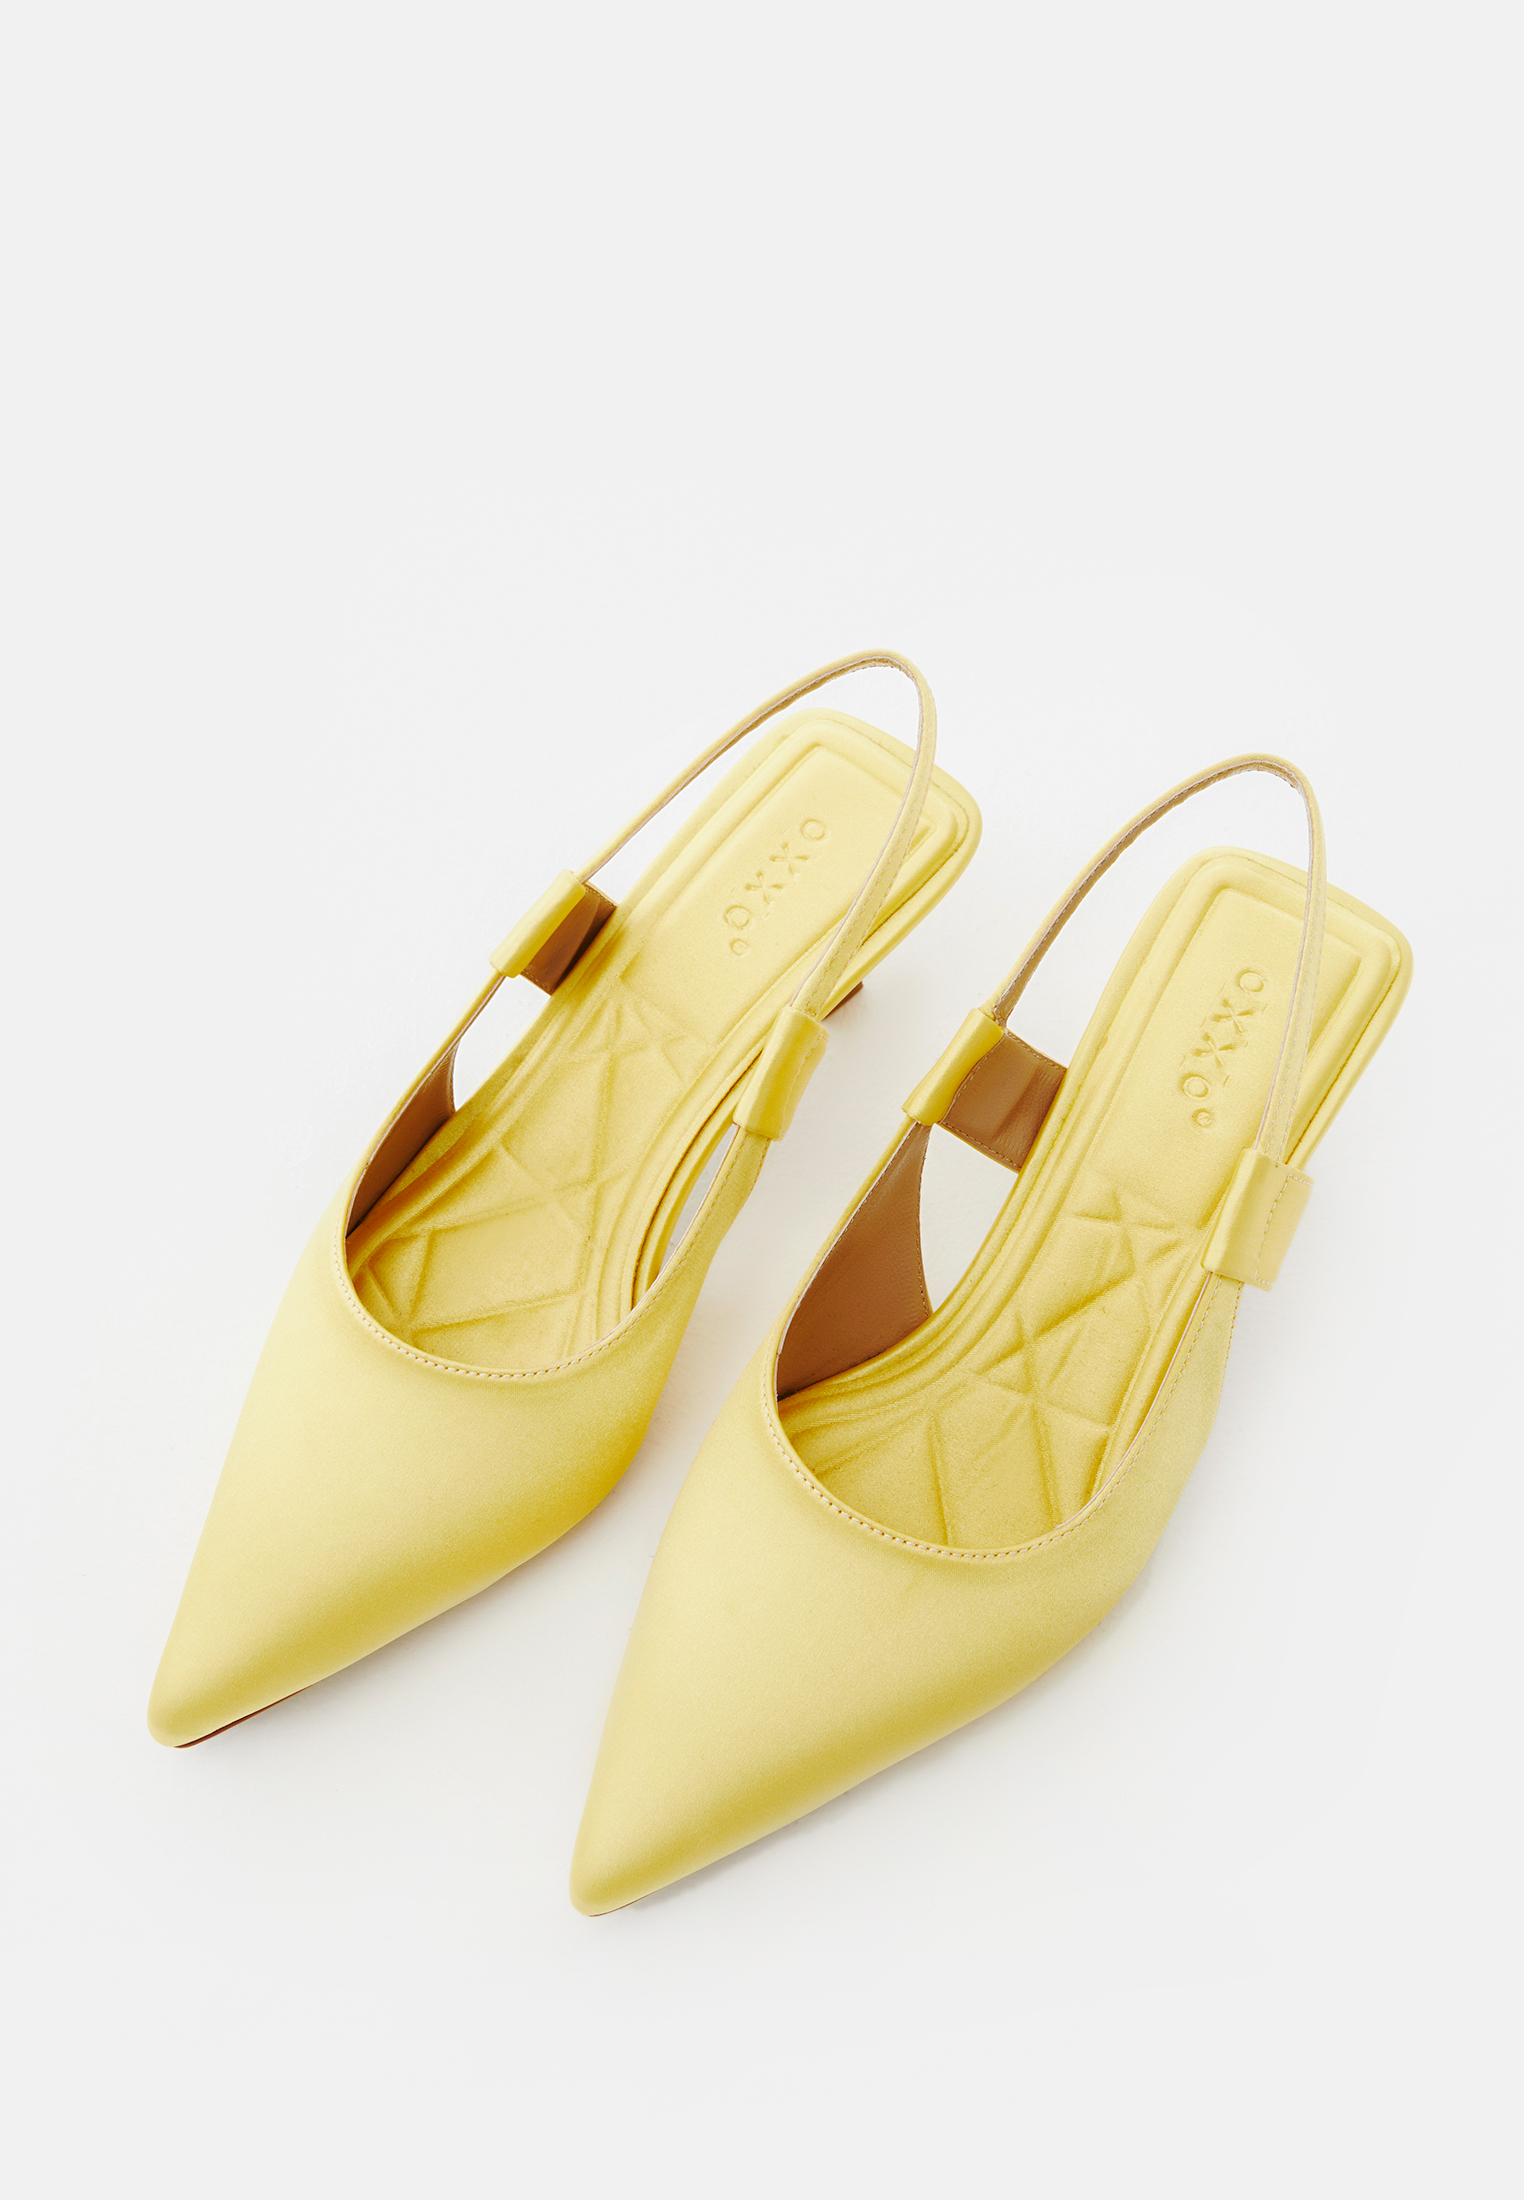 Yellow Rhythm Slingback Heels by Marni on Sale